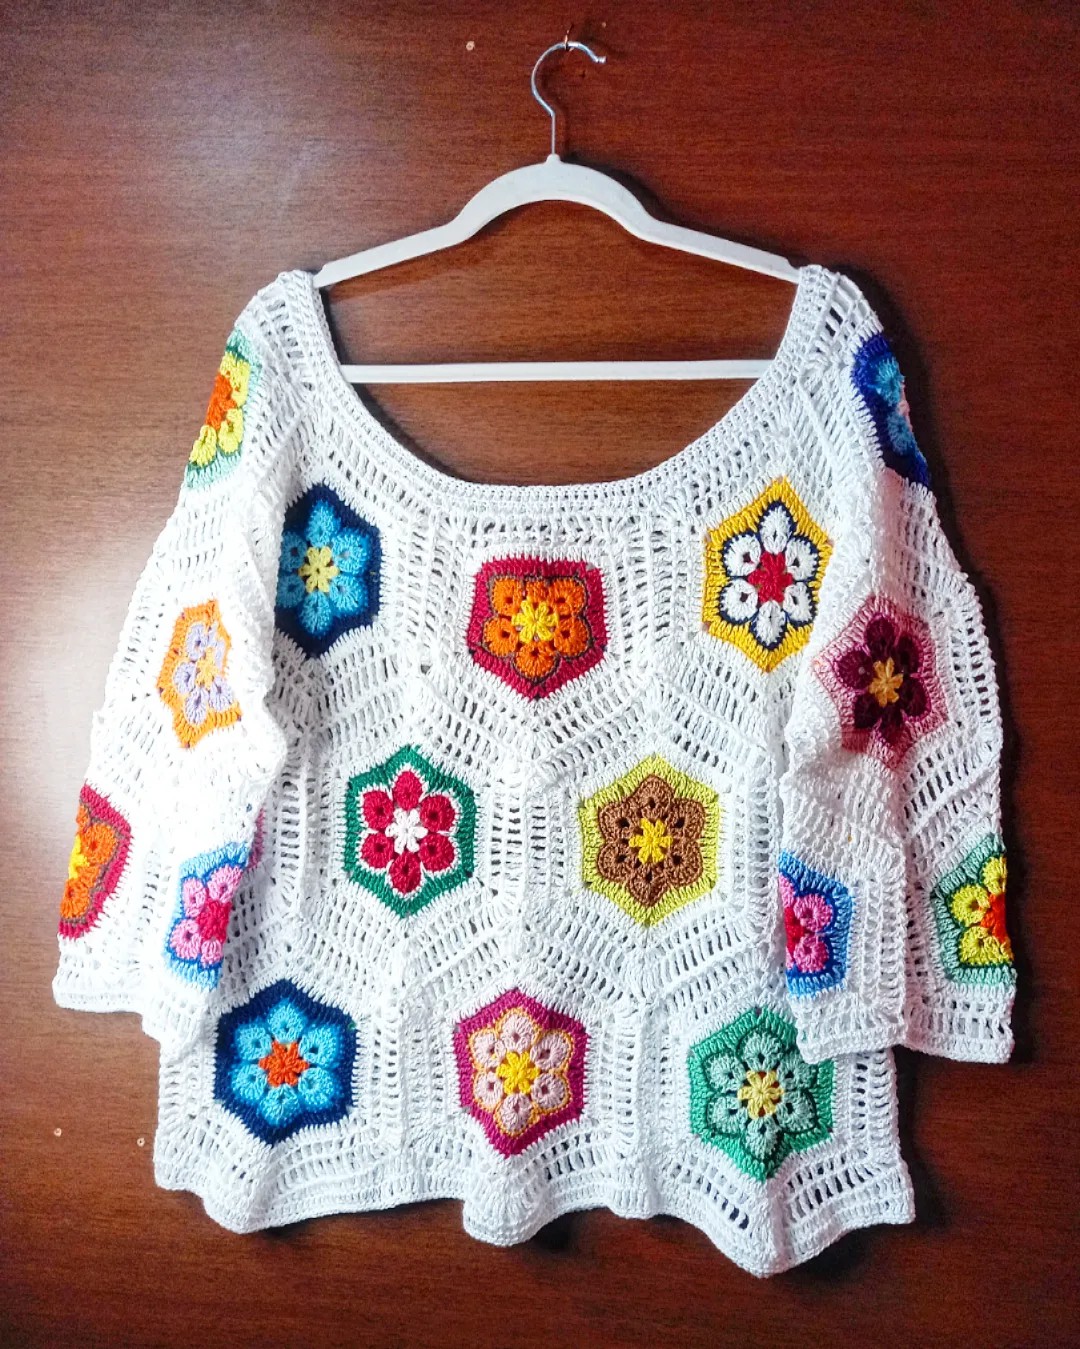 Blusa de crochê com flor africana - Crochê das Flores